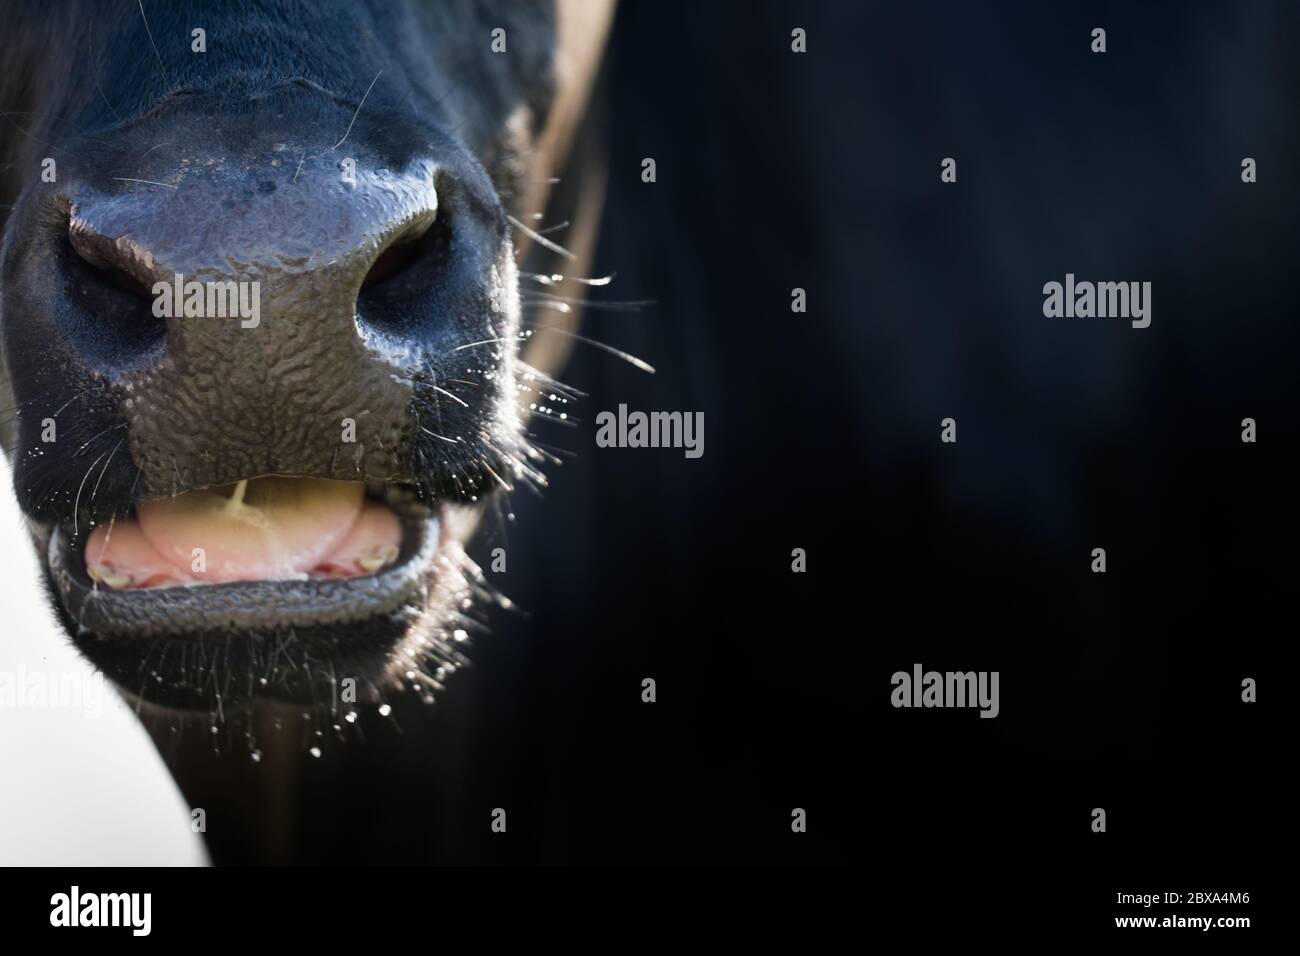 Primo piano di una mucca di razza ruminante tutta nera illuminata lateralmente dal sole. Il becco è leggermente aperto, la lingua e alcuni denti sono visibili Foto Stock